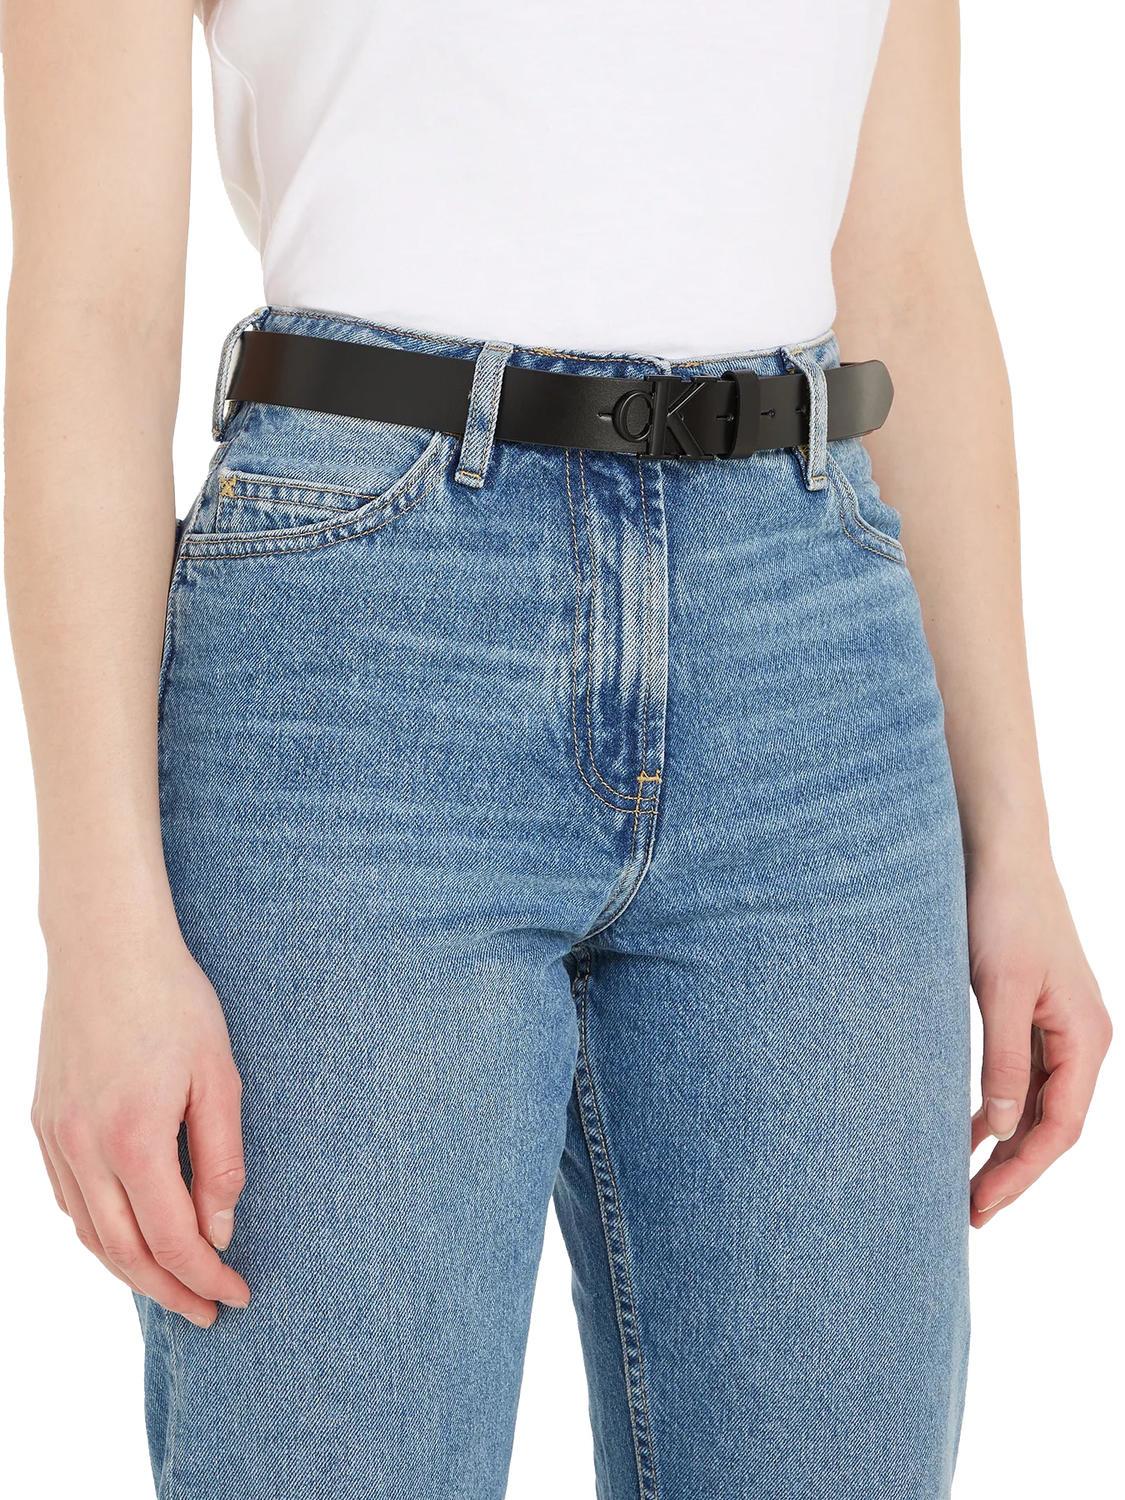 Schwarz- Outlet-Preisen! Einkaufen Klein Zu Round Calvin Mono Ledergürtel Ck Jeans 3.0